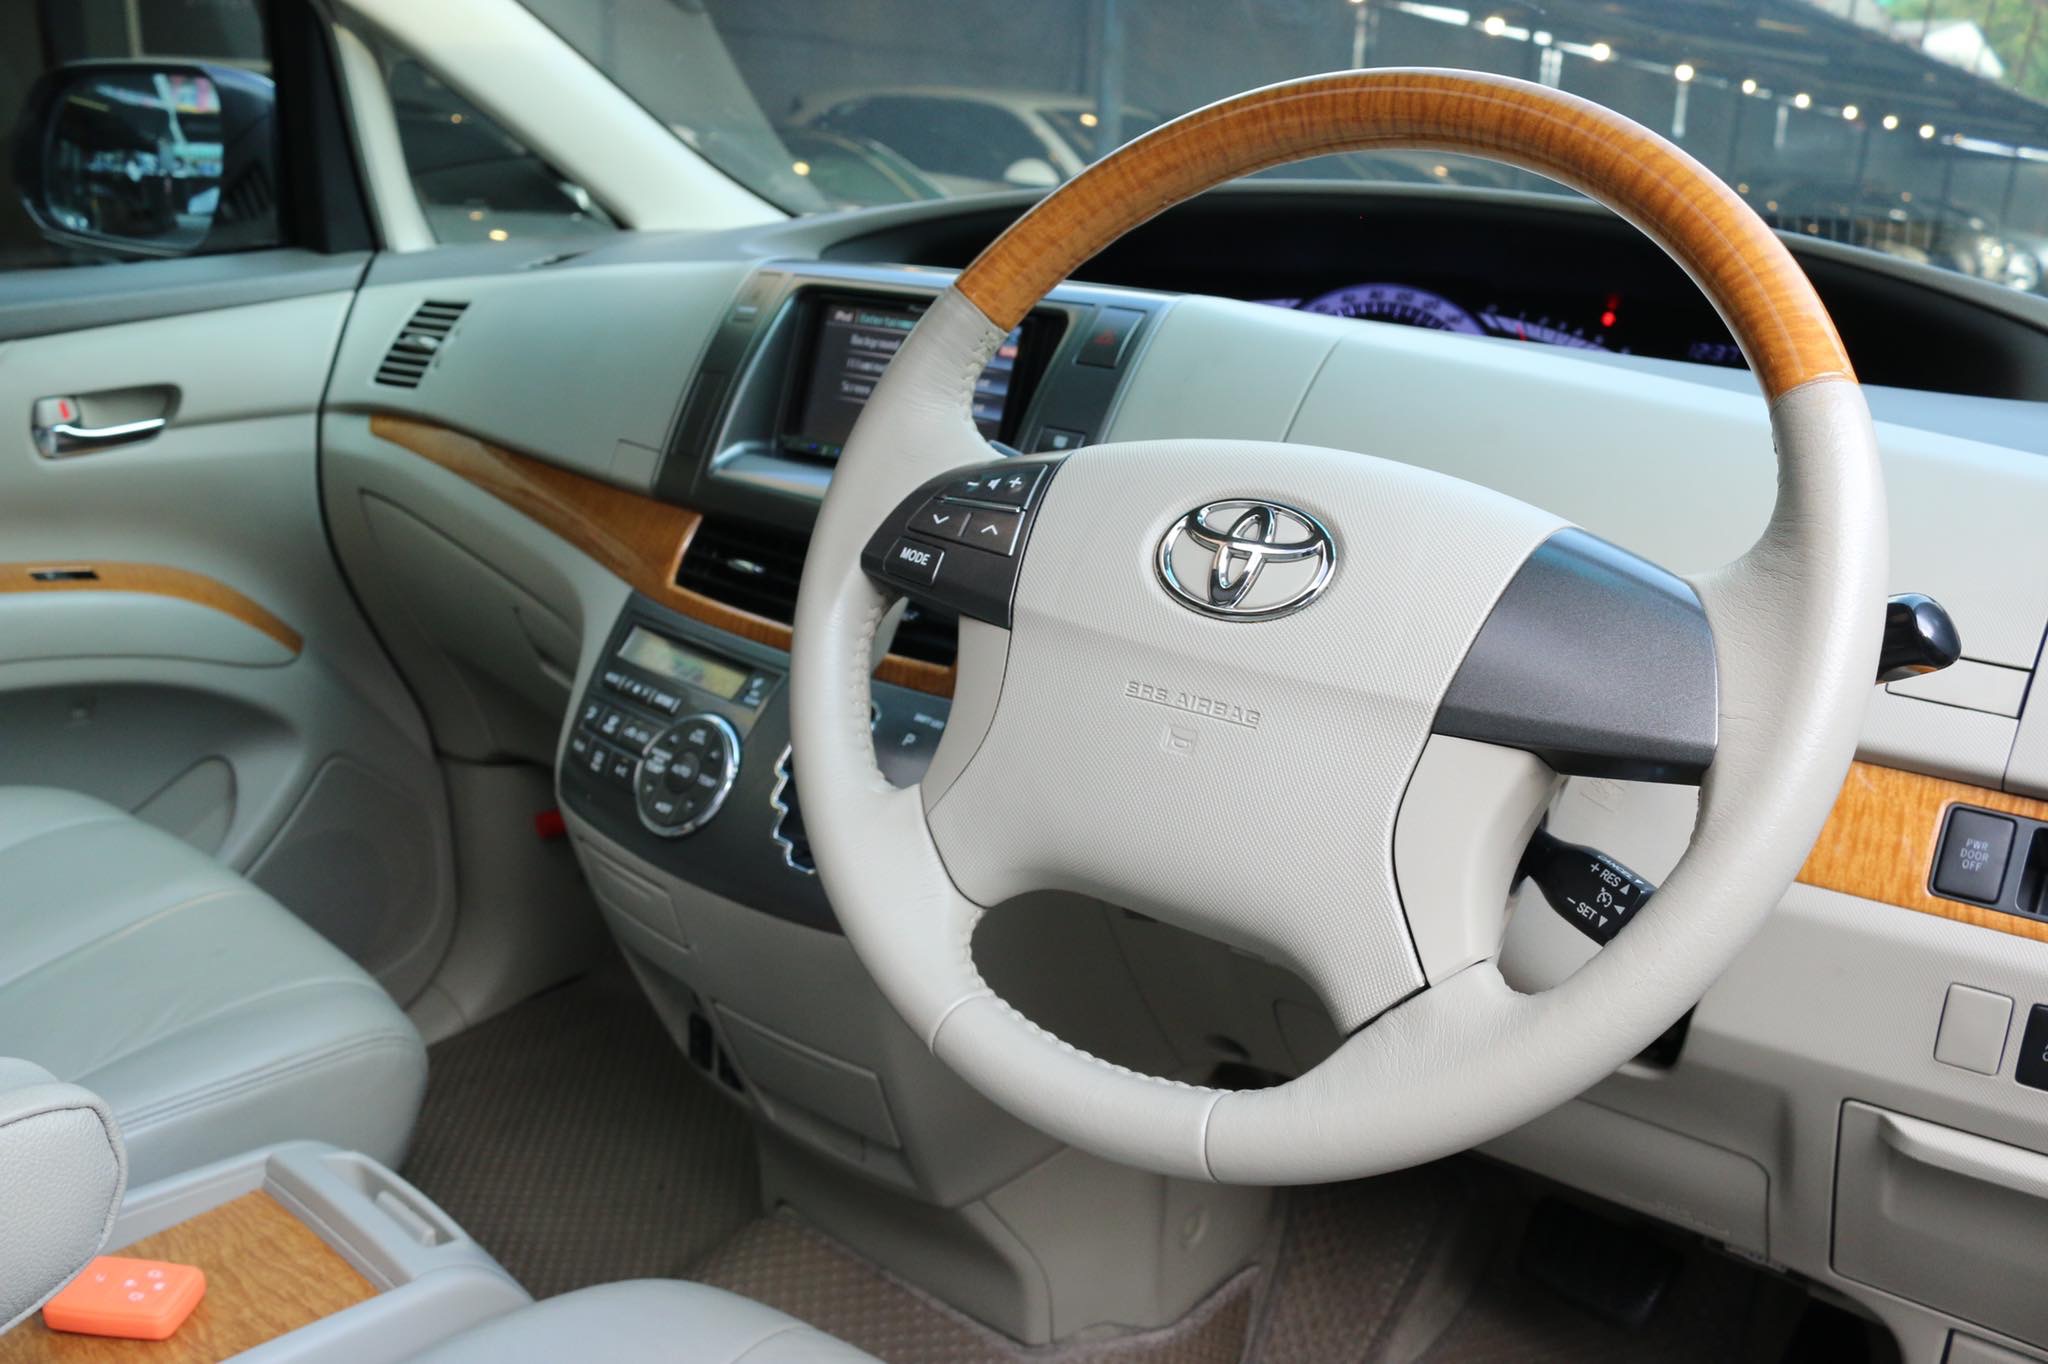 Toyota Estima ปี 2010 สีขาว